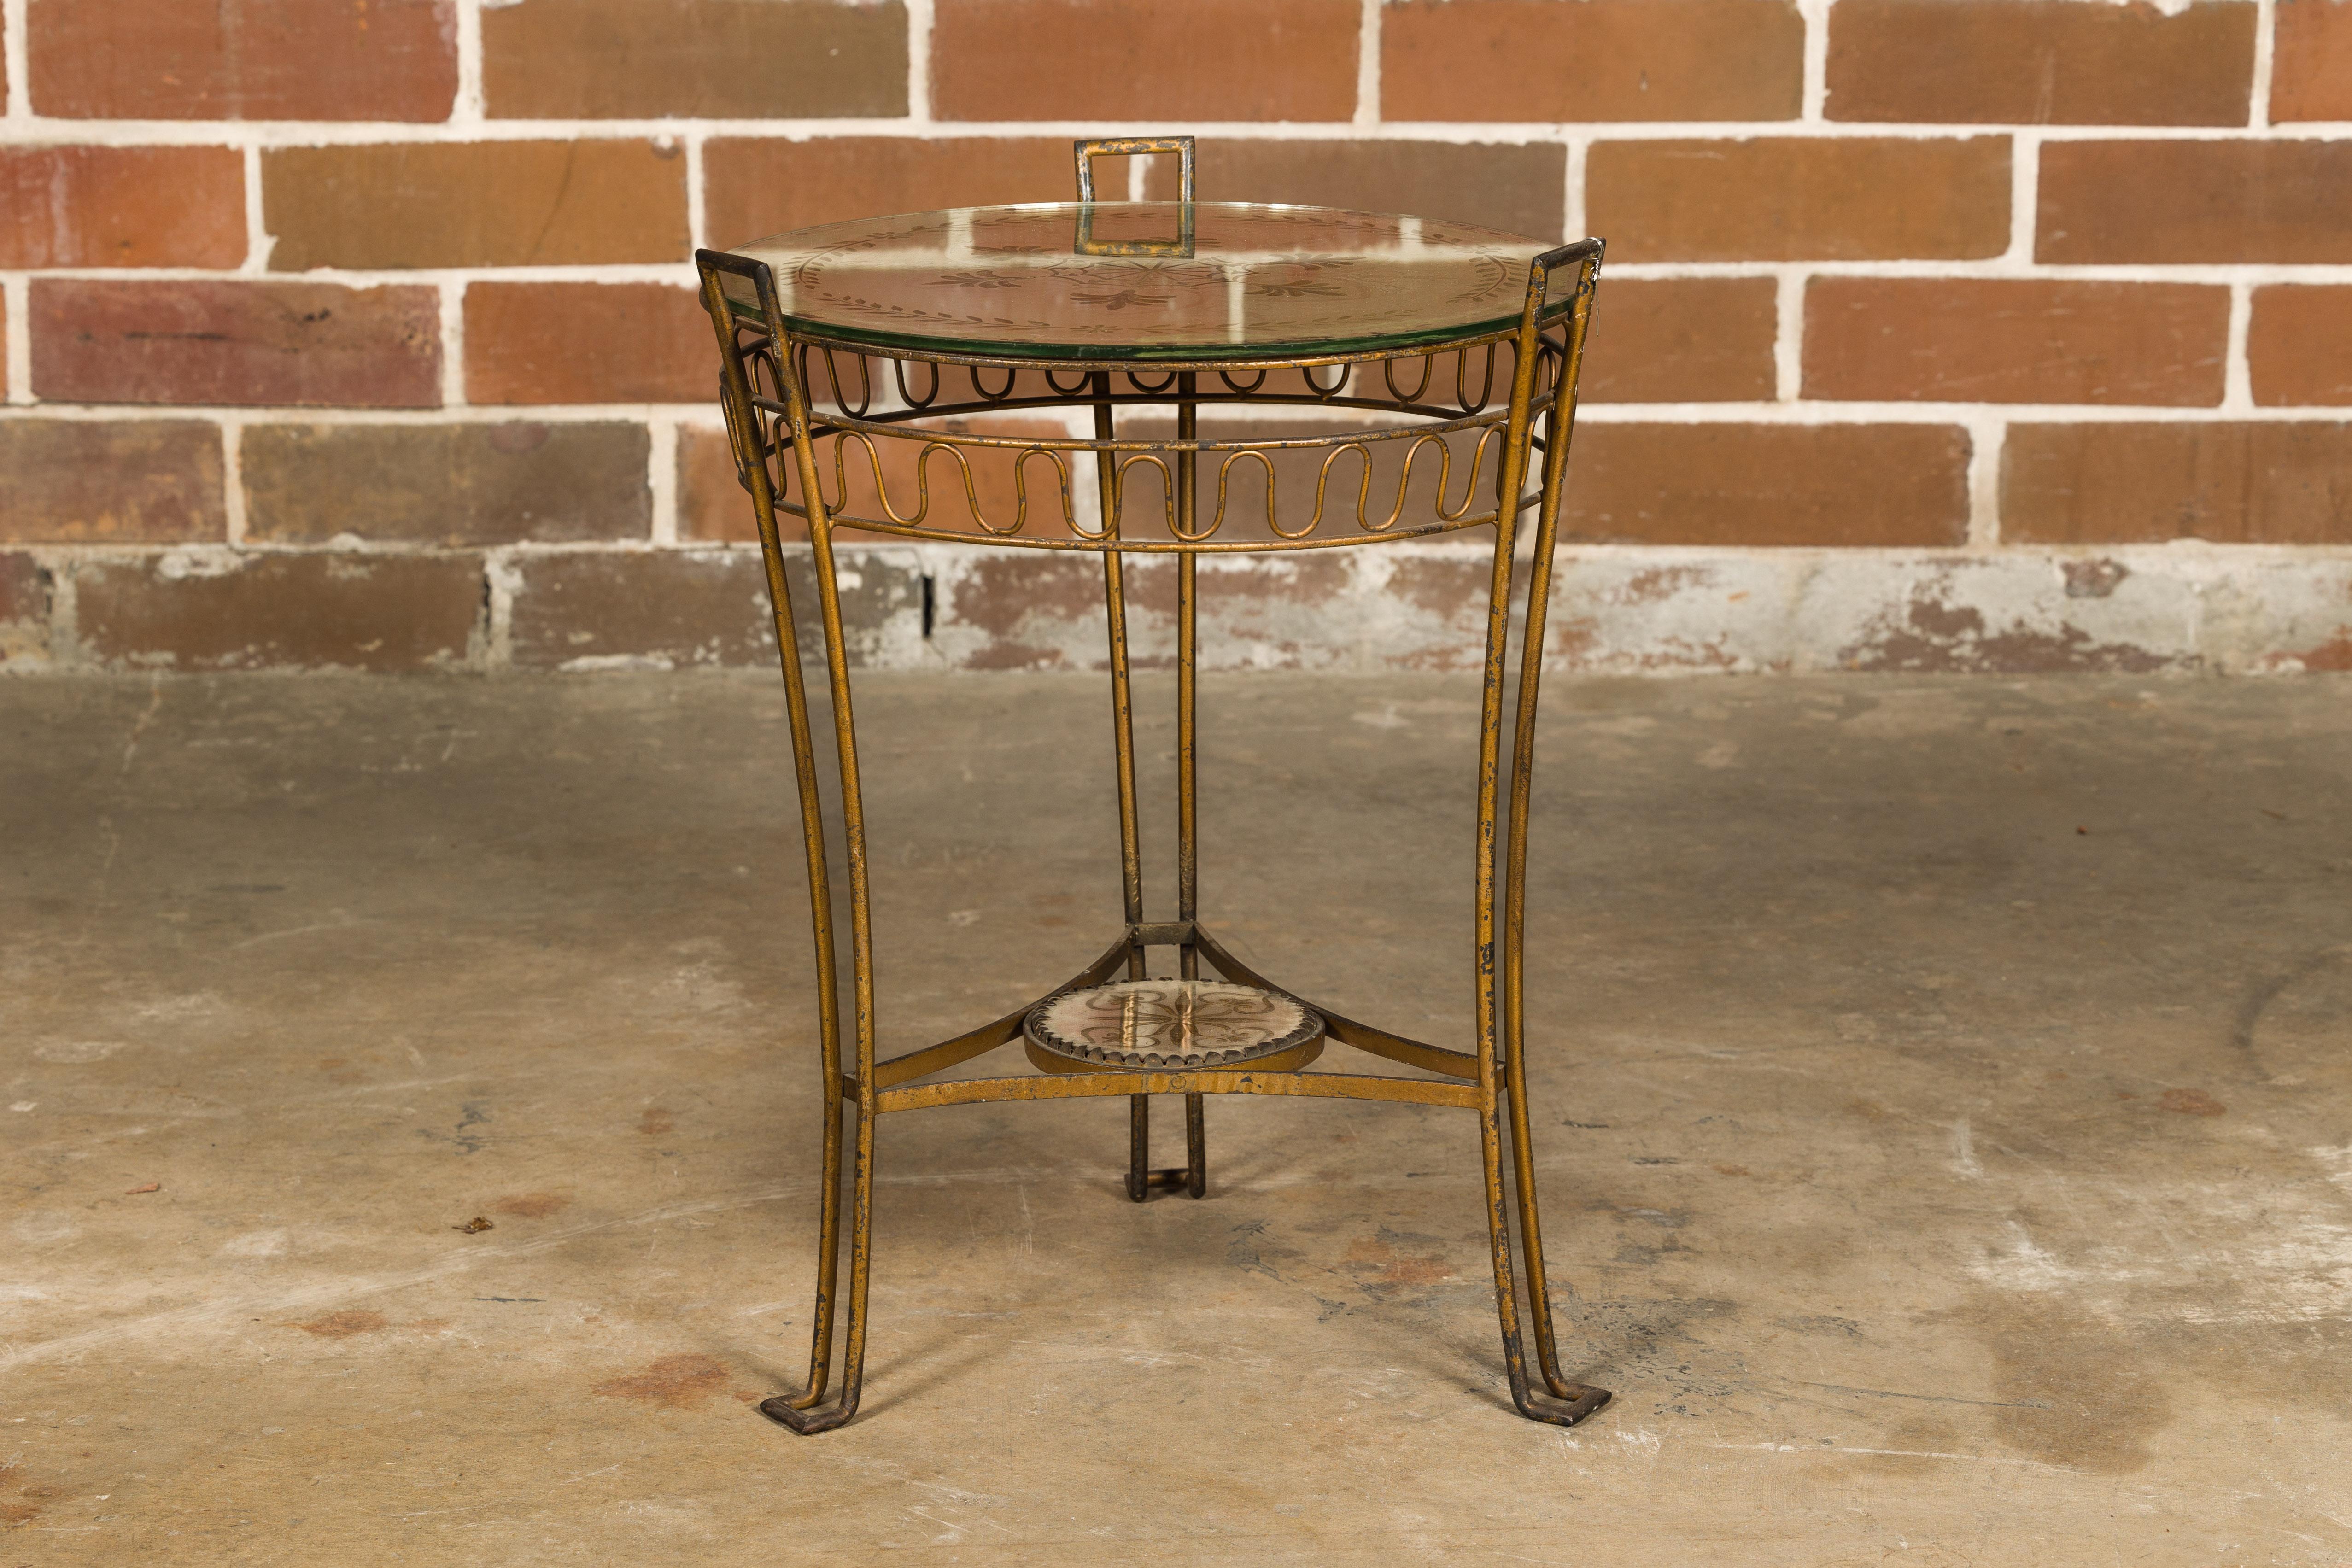 Table d'appoint en fer doré datant de 1920, avec plateau en miroir gravé et étagère basse. Entrez dans l'élégance parisienne des années 1920 avec cette exquise table d'appoint en fer doré français, dotée d'un plateau en miroir gravé, d'une petite